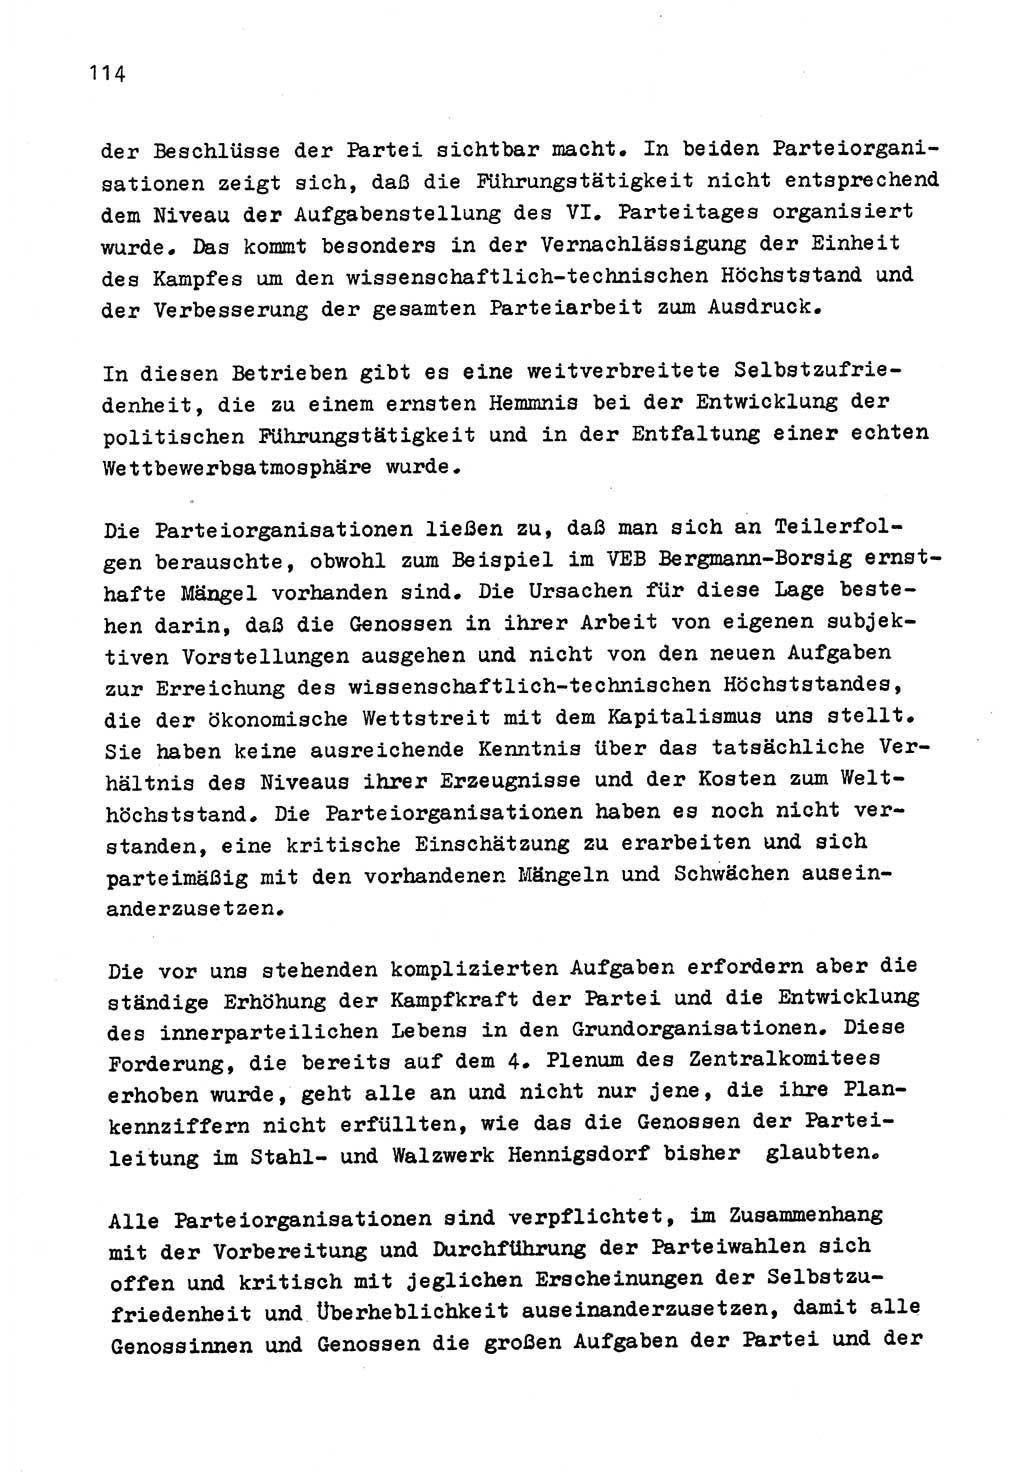 Zu Fragen der Parteiarbeit [Sozialistische Einheitspartei Deutschlands (SED) Deutsche Demokratische Republik (DDR)] 1979, Seite 114 (Fr. PA SED DDR 1979, S. 114)